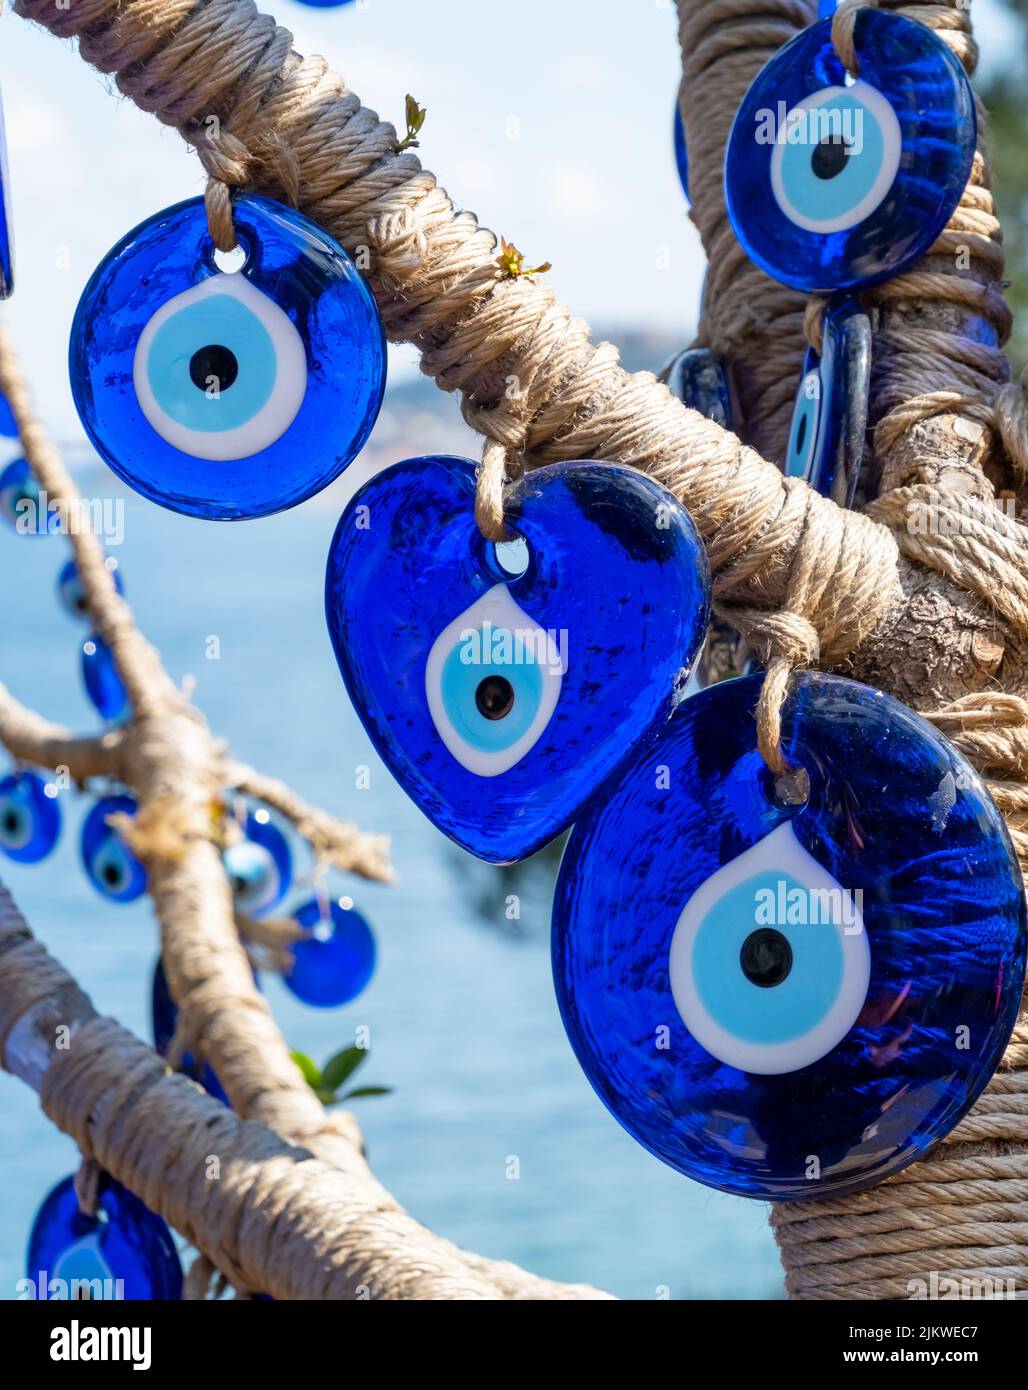 Böse Augenperlen aus der Nähe. Nazar-Perlen. Türkisches Touristen-Souvenir, Istanbul, Türkei Stockfoto